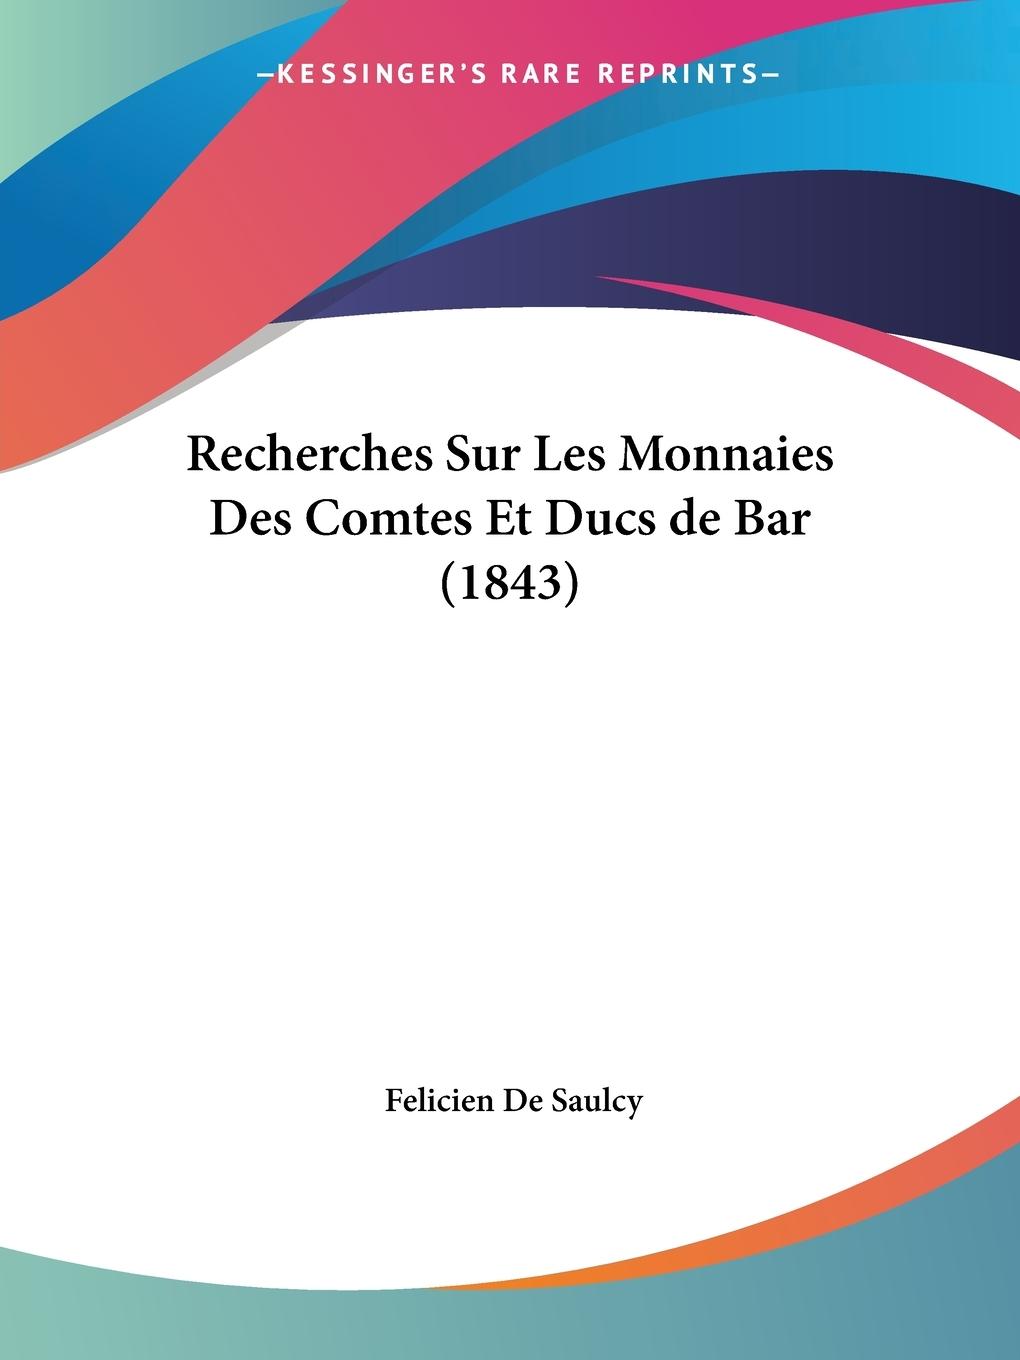 Recherches Sur Les Monnaies Des Comtes Et Ducs de Bar (1843) - De Saulcy, Felicien